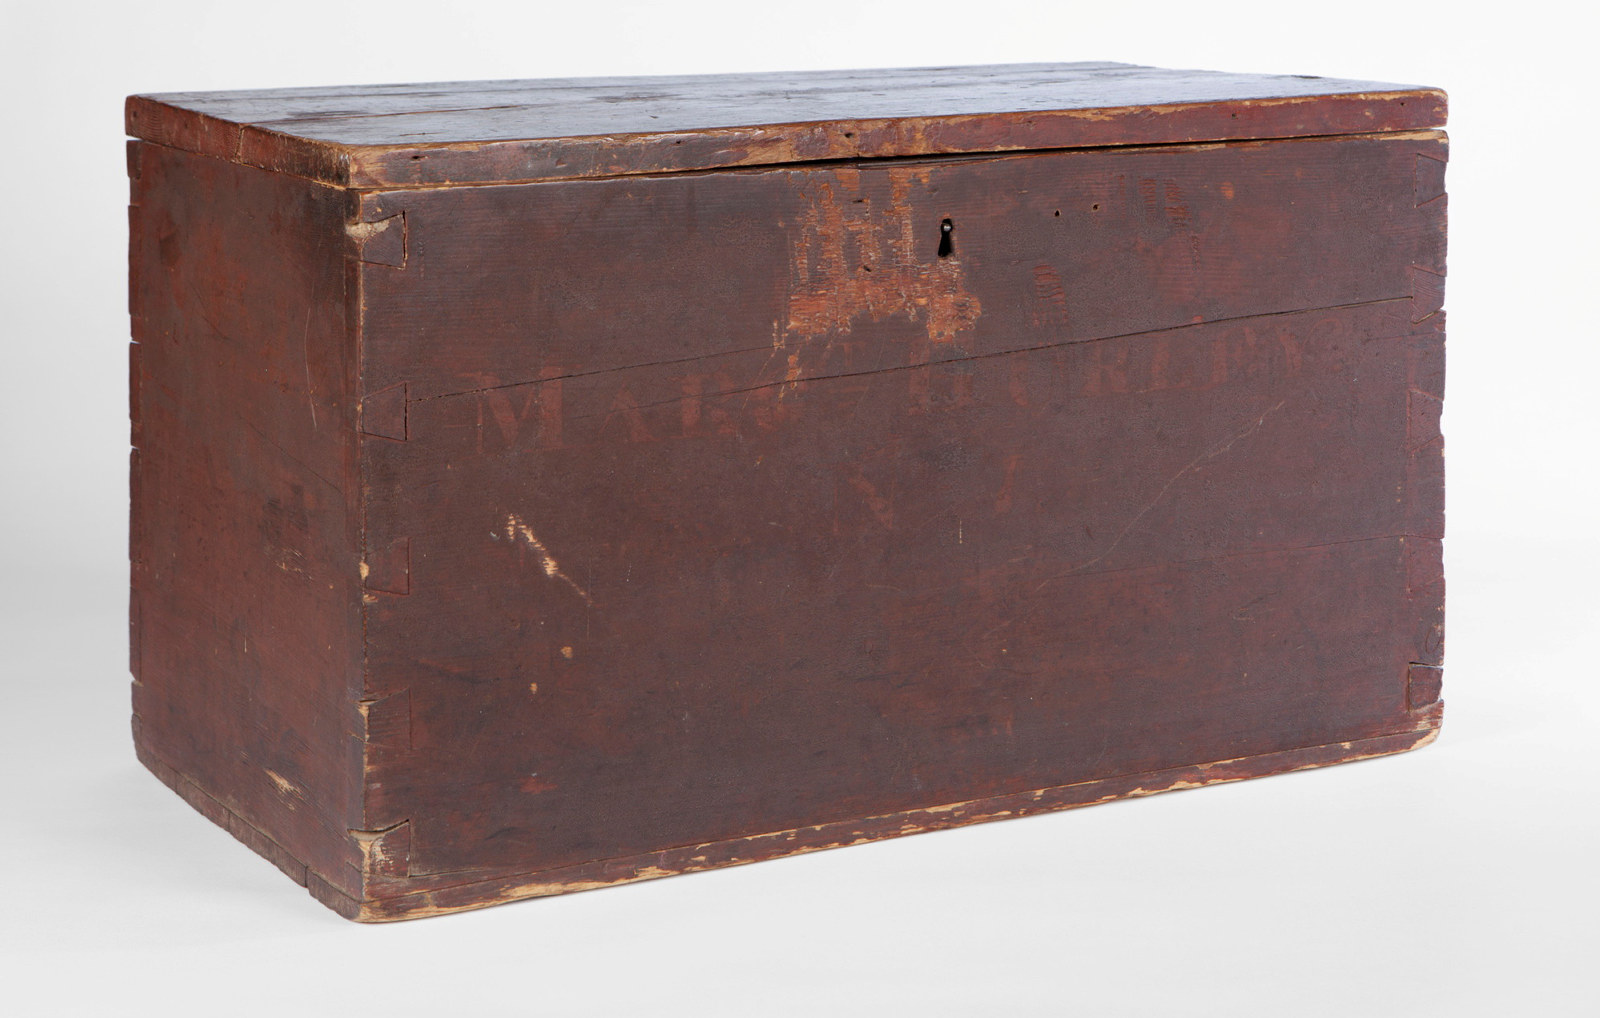 Wooden box belonging to Margaret Hurley